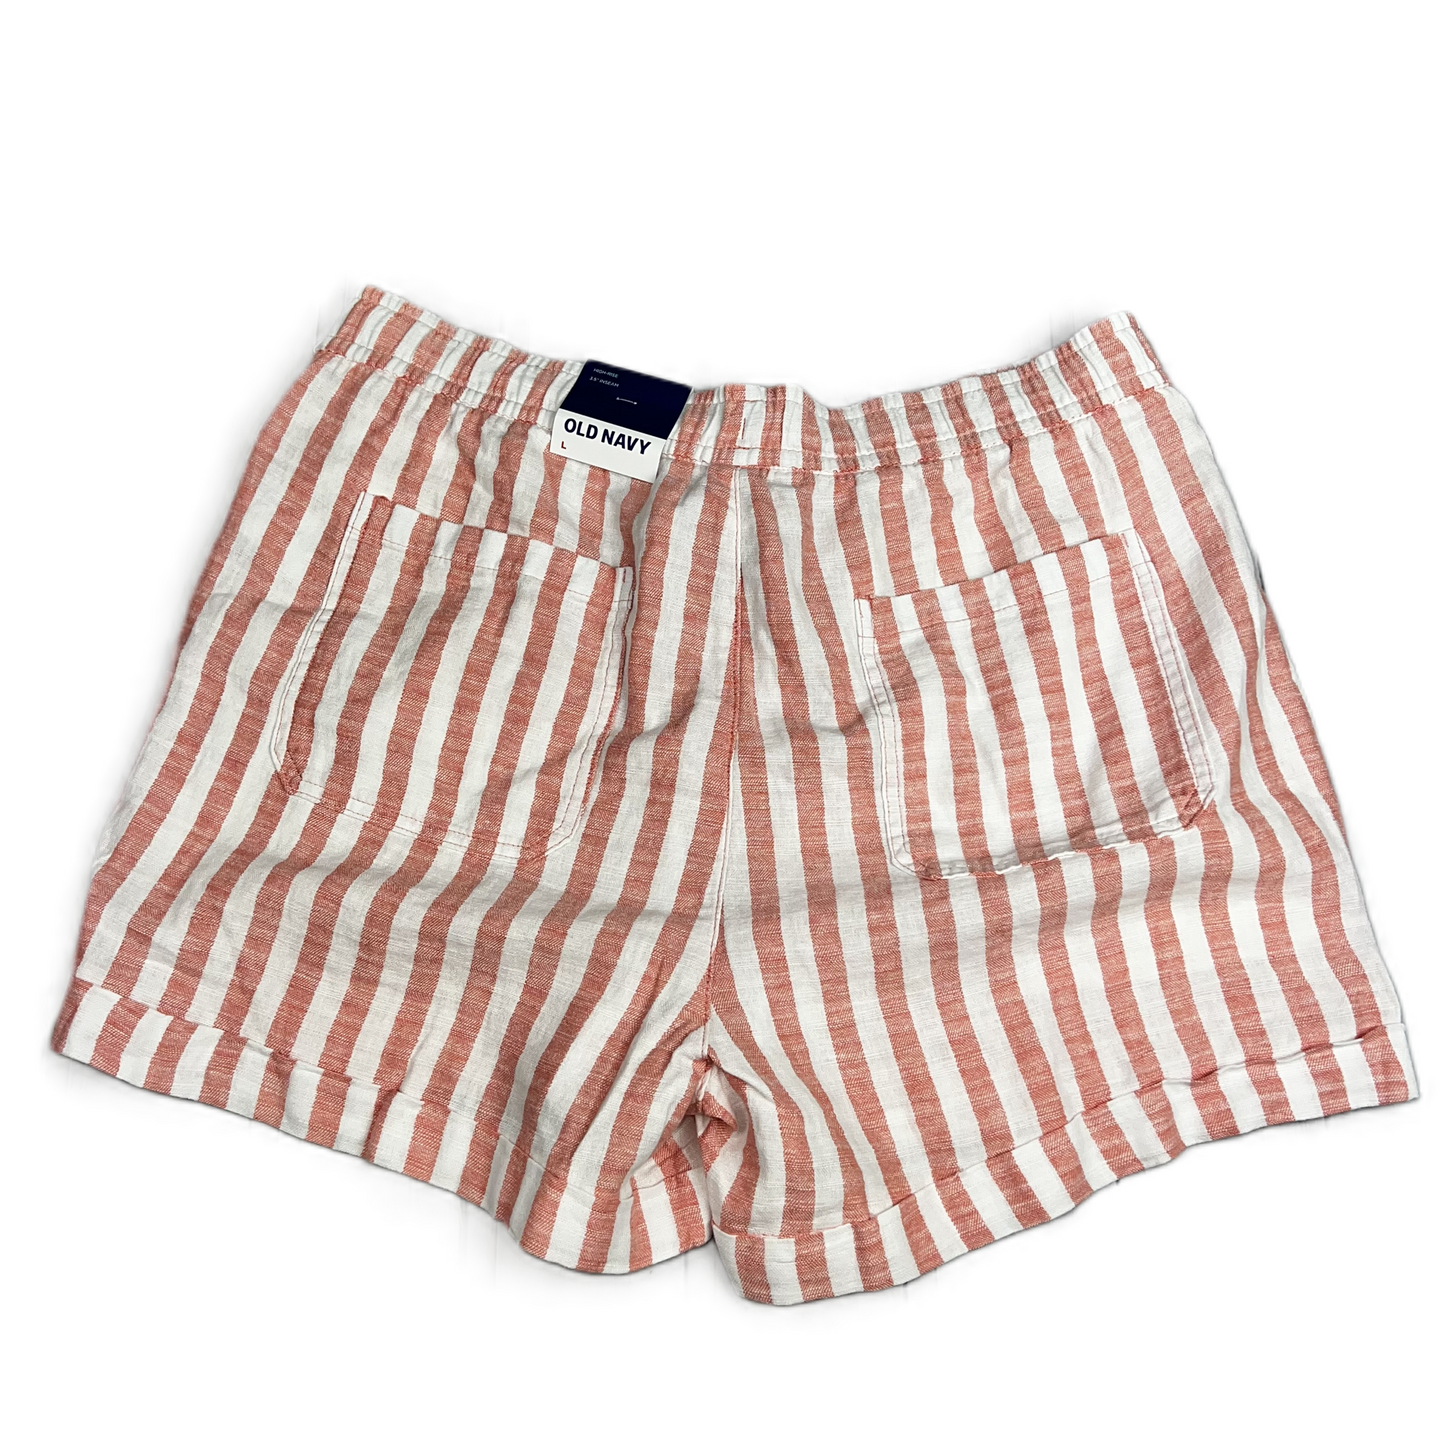 Orange & White Shorts By Old Navy Size: L